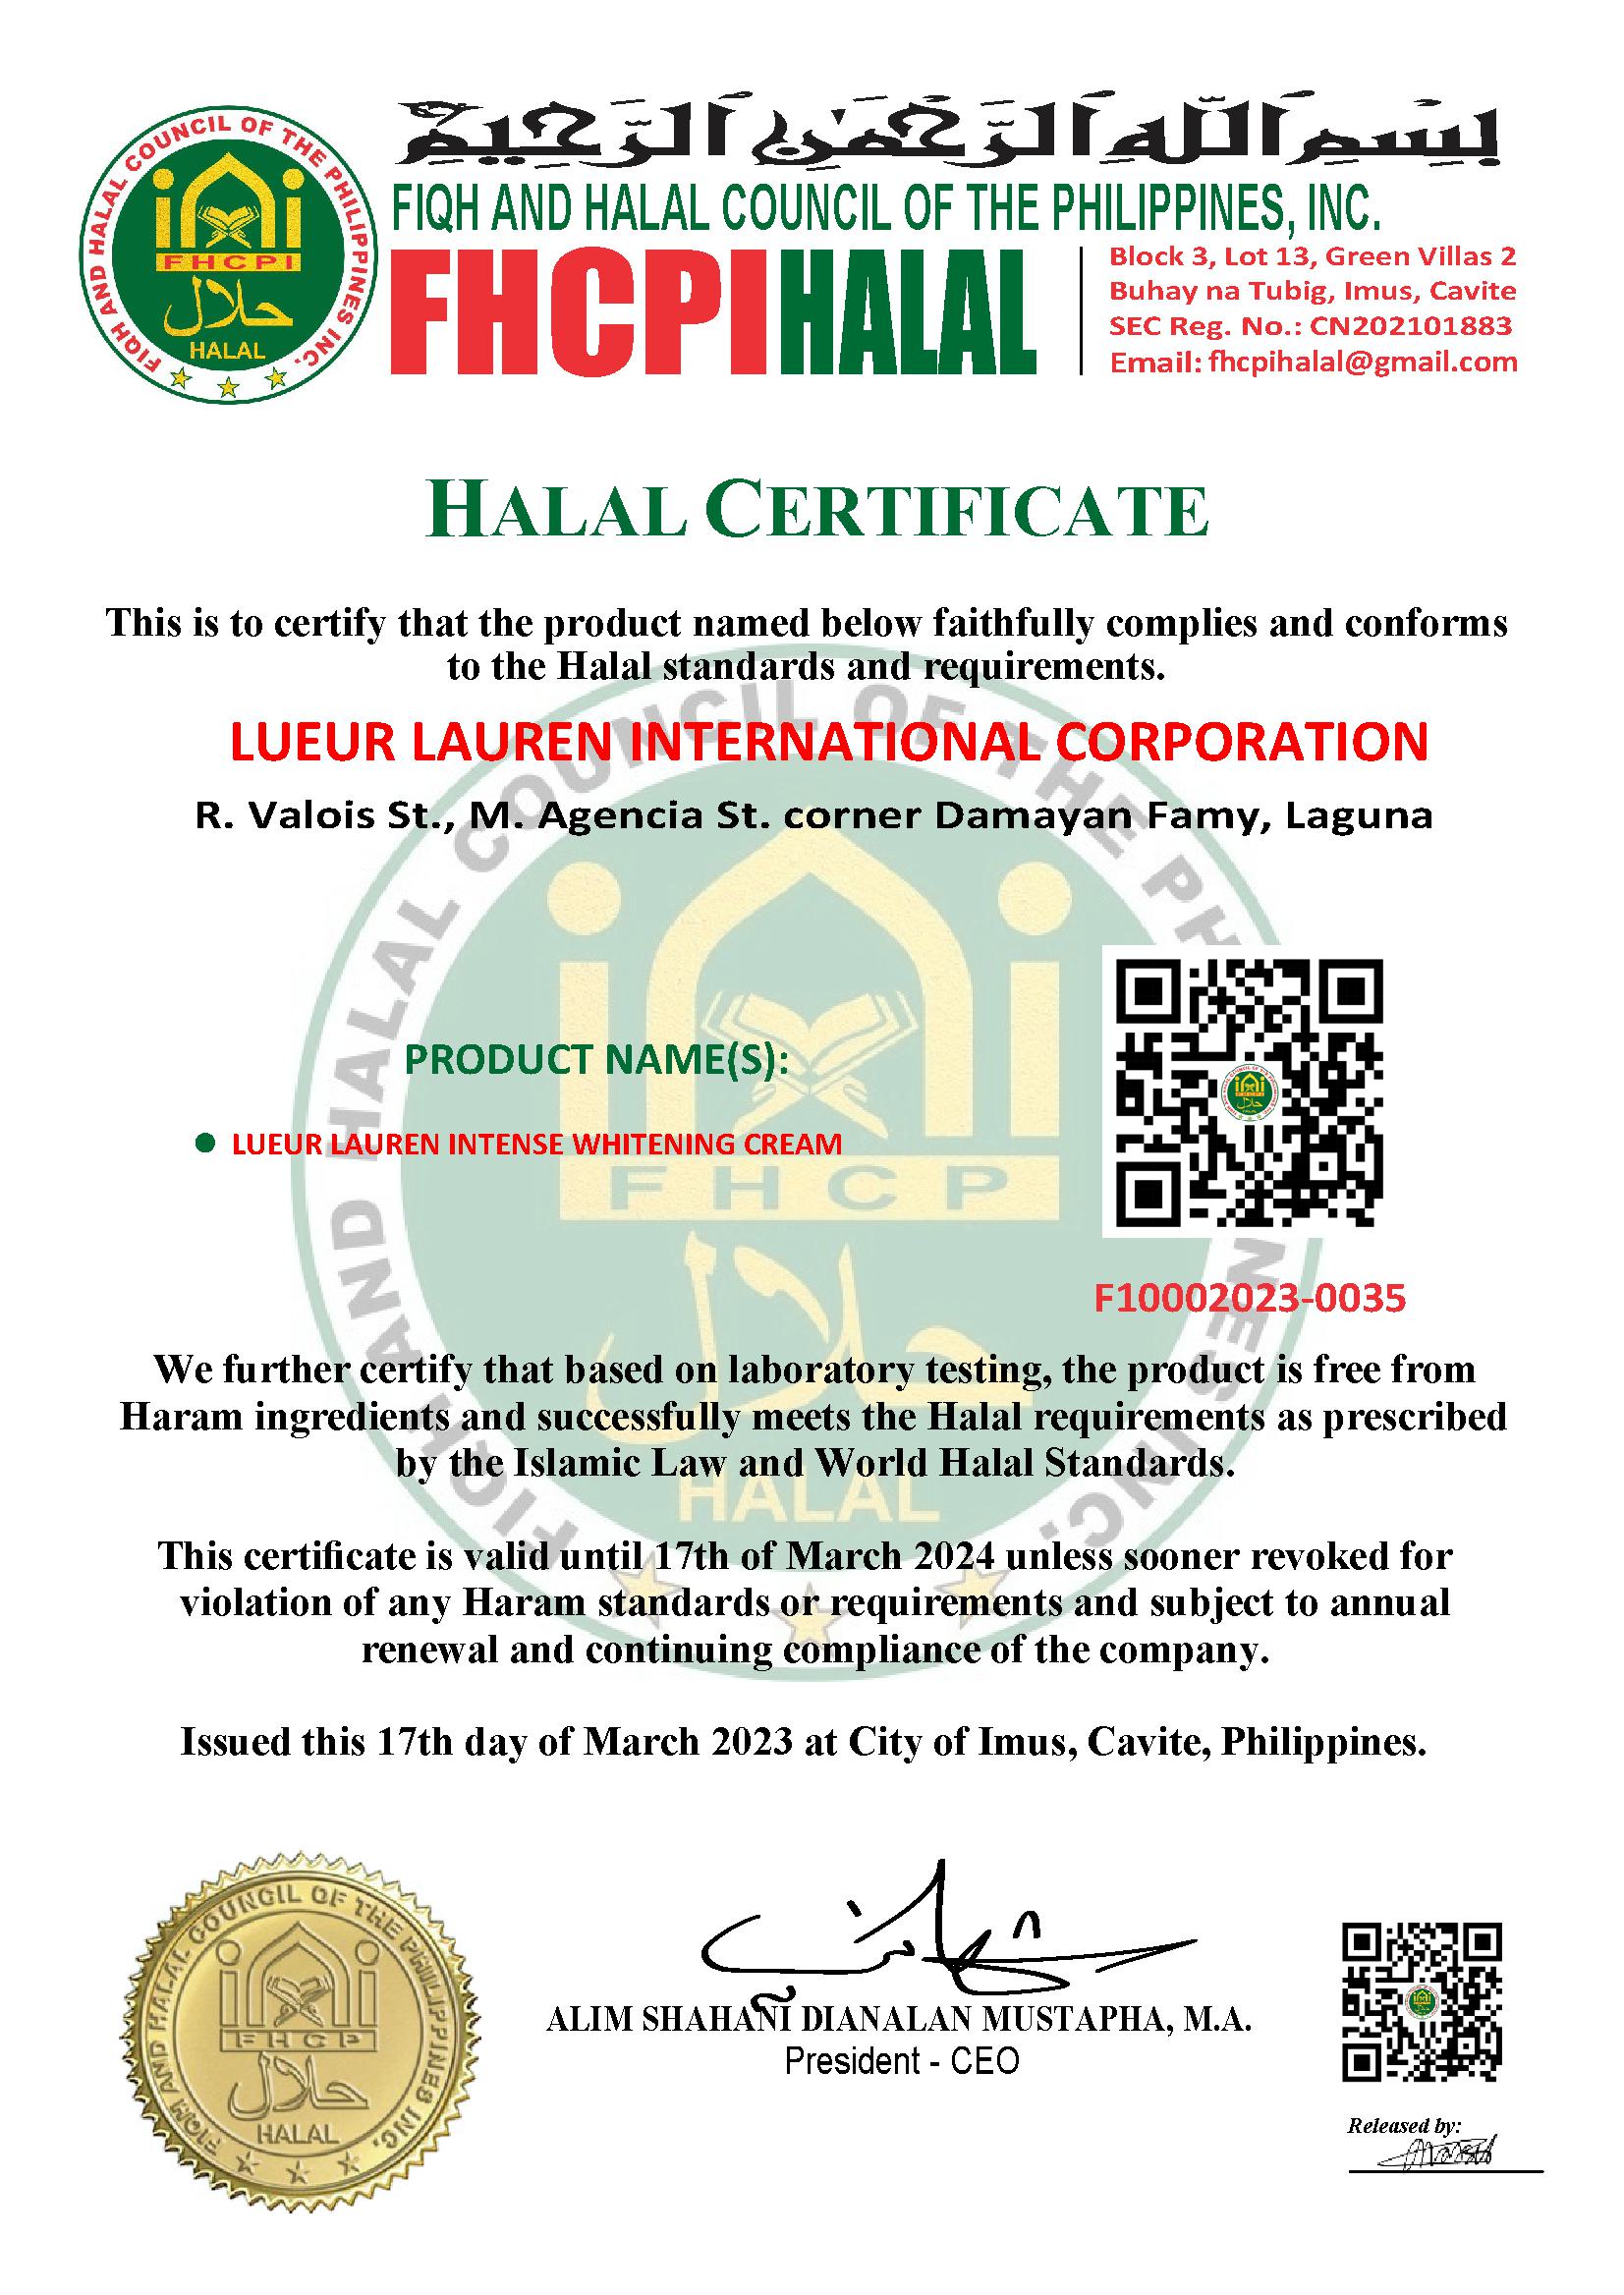 About LLIC | LueurLauren International Corp.